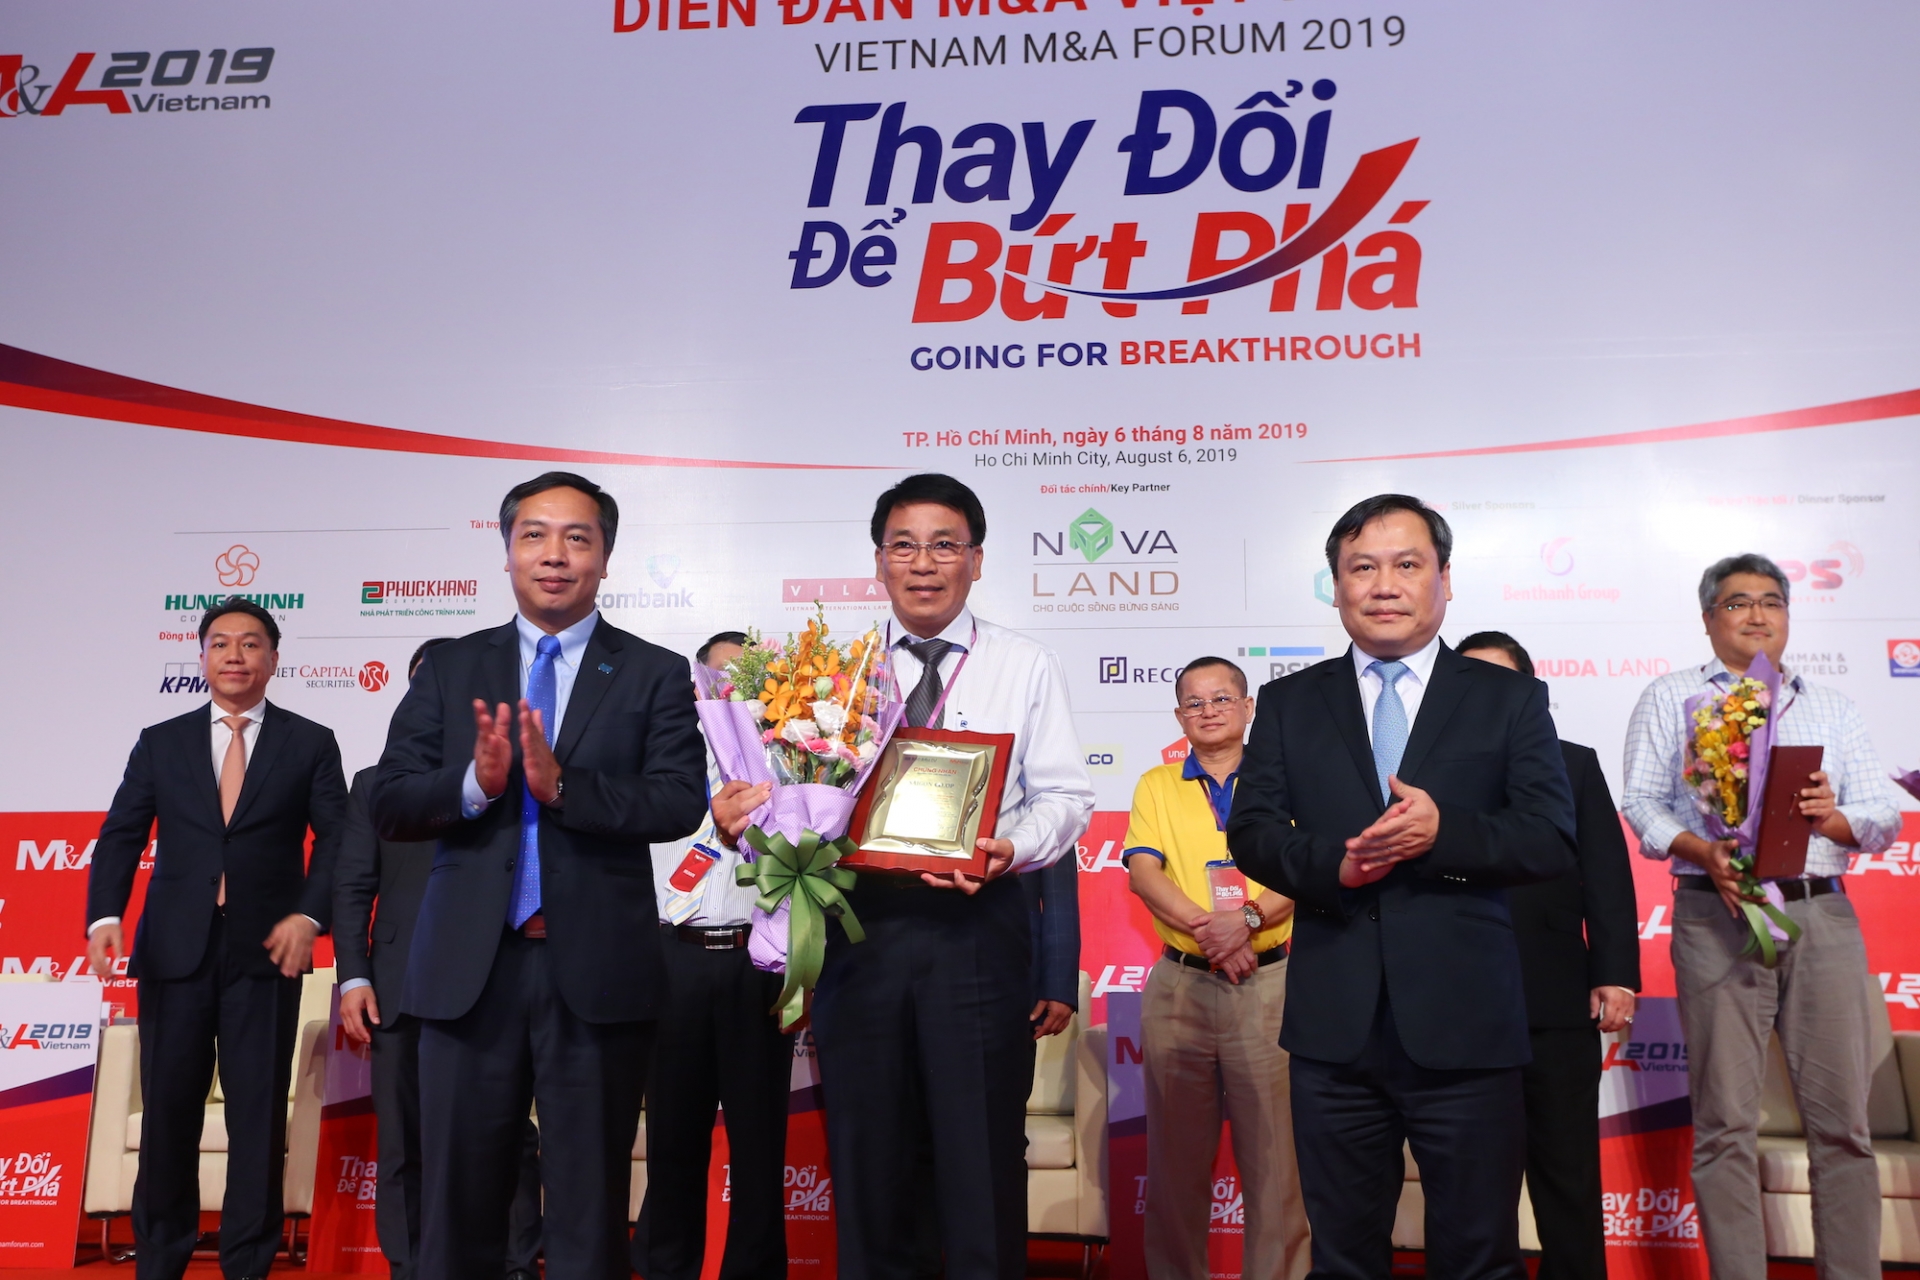 Vietnam M&A Forum 2019 awards winners of 2018-2019